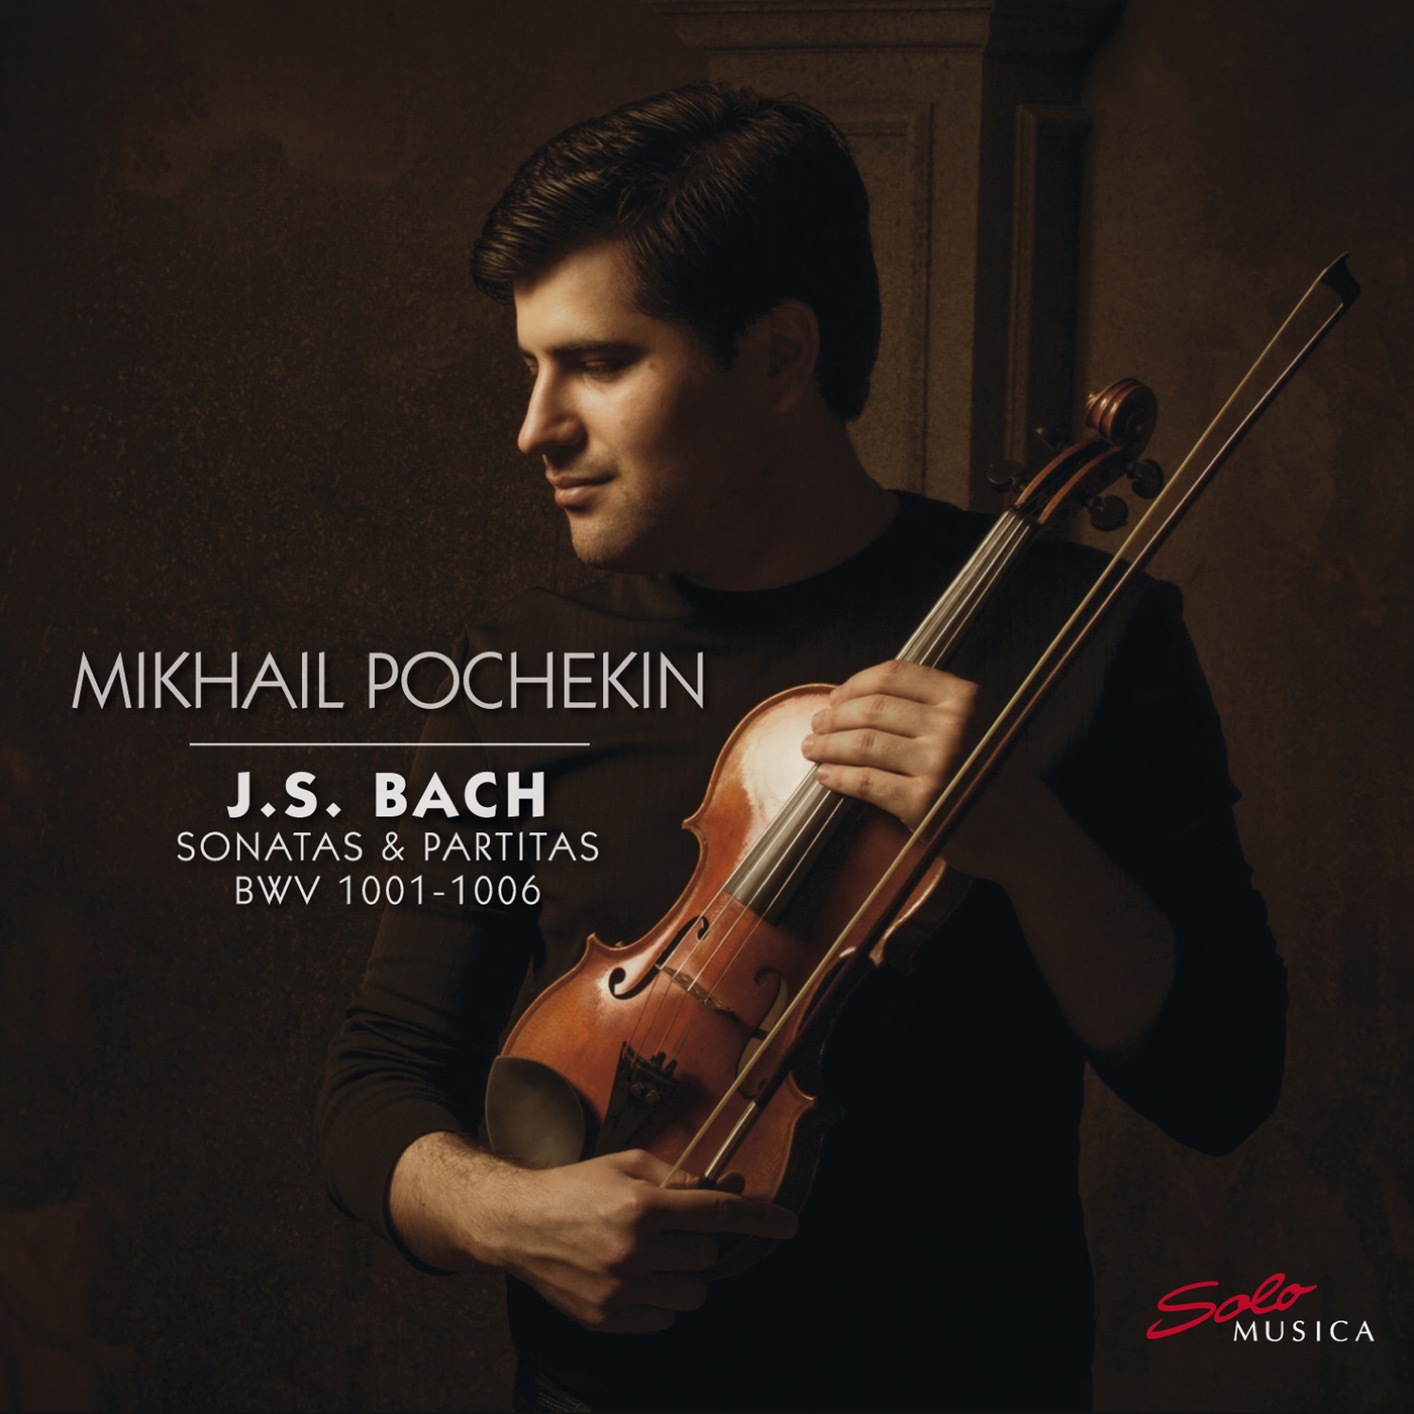 Mikhail Pochekin - J.S. Bach: Sonatas & Partitas BWVV 1001-1006 (2019) [FLAC 24bit/96kHz]